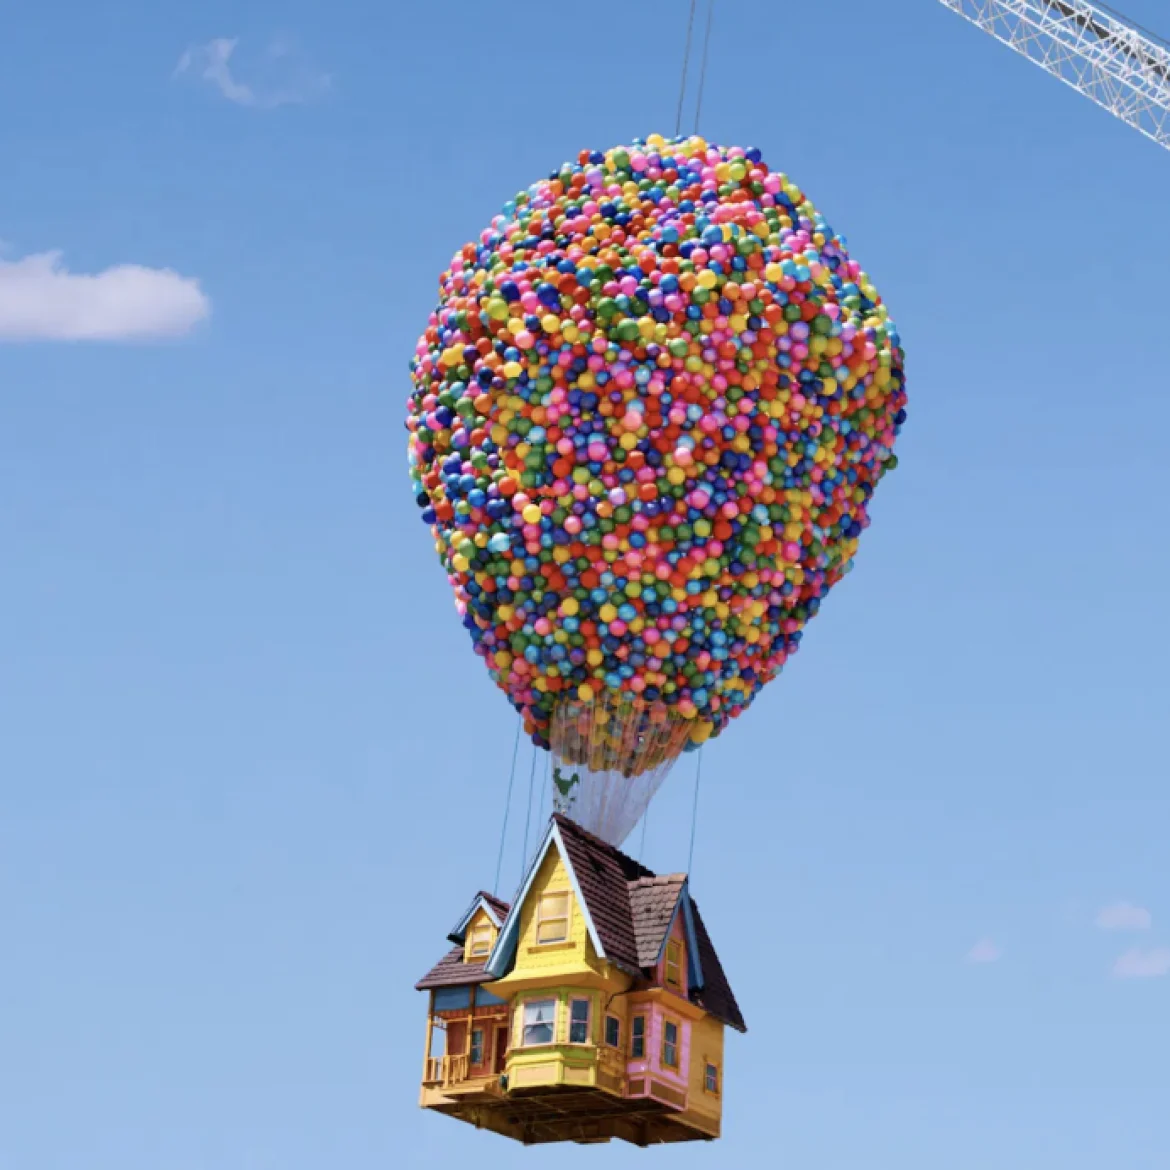 Vliegende huis van Up met ballonnen